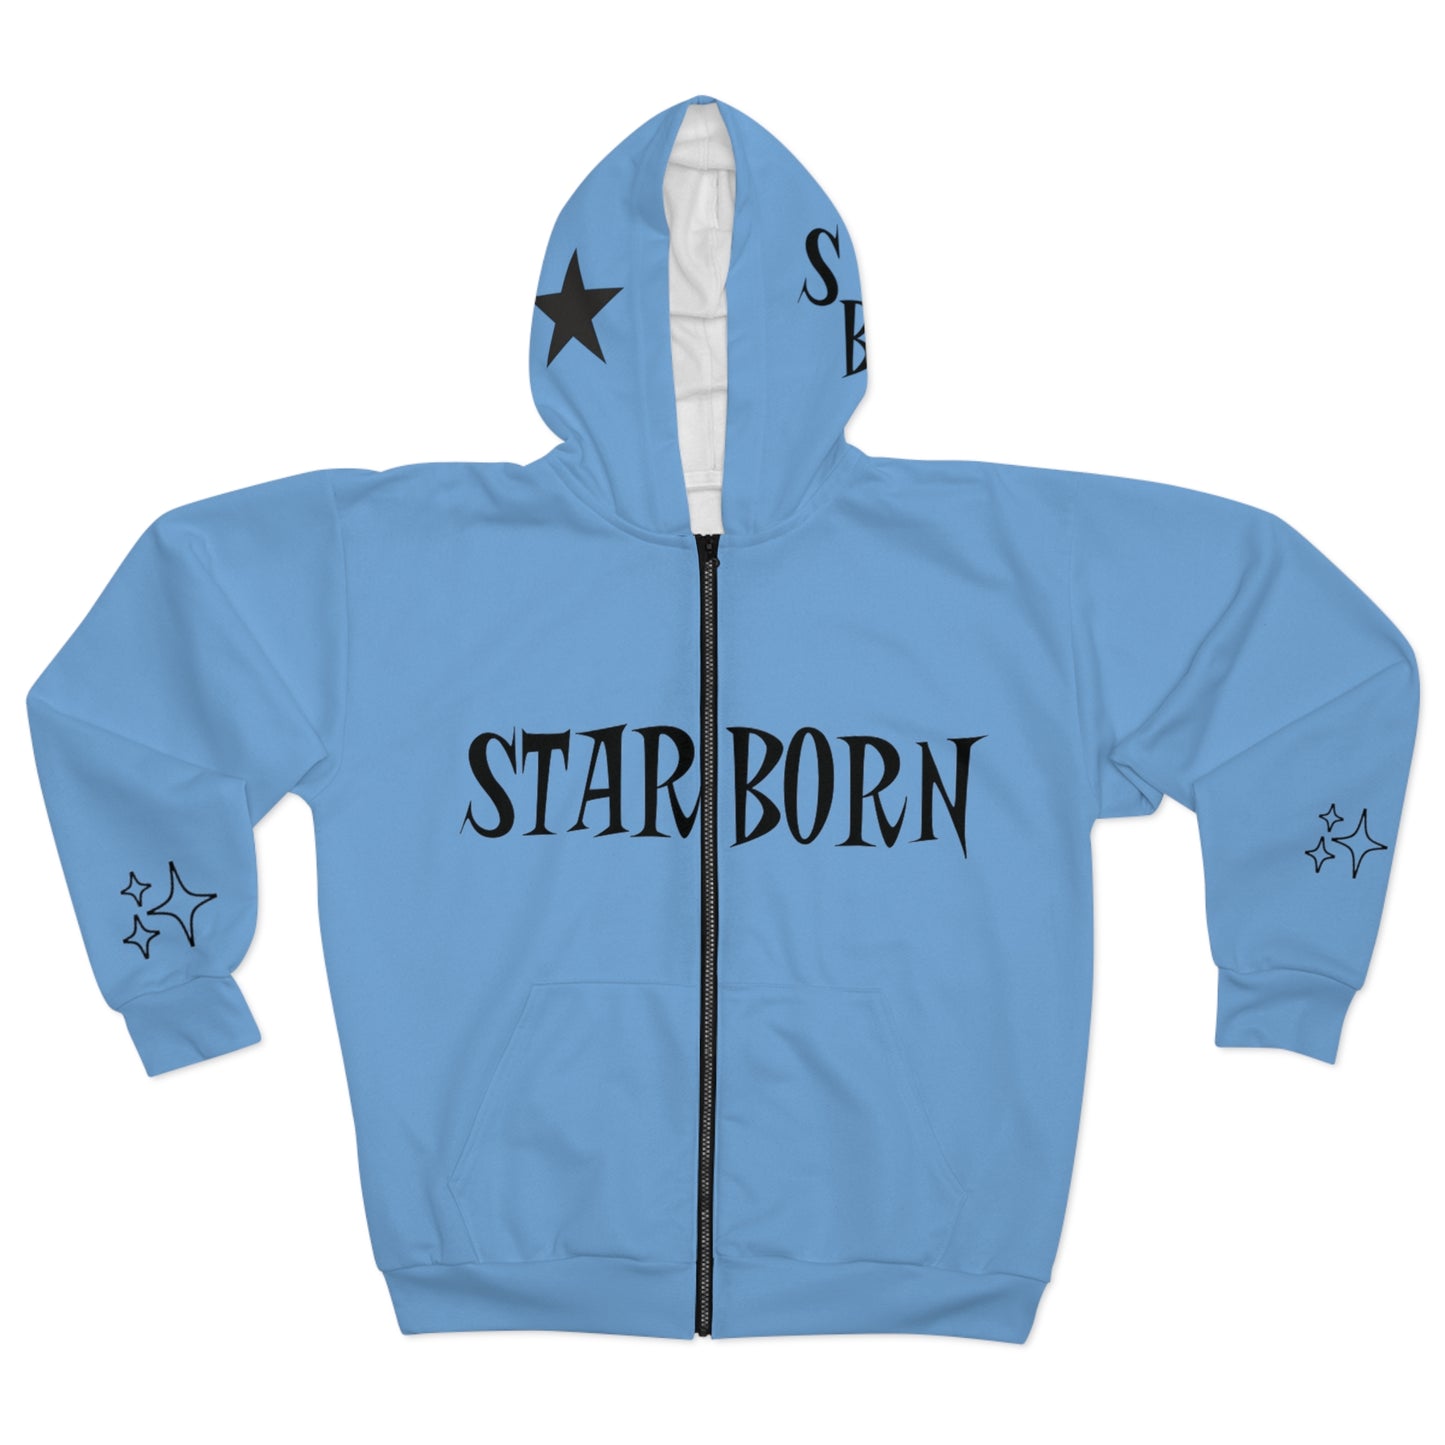 Starborn blue zip up